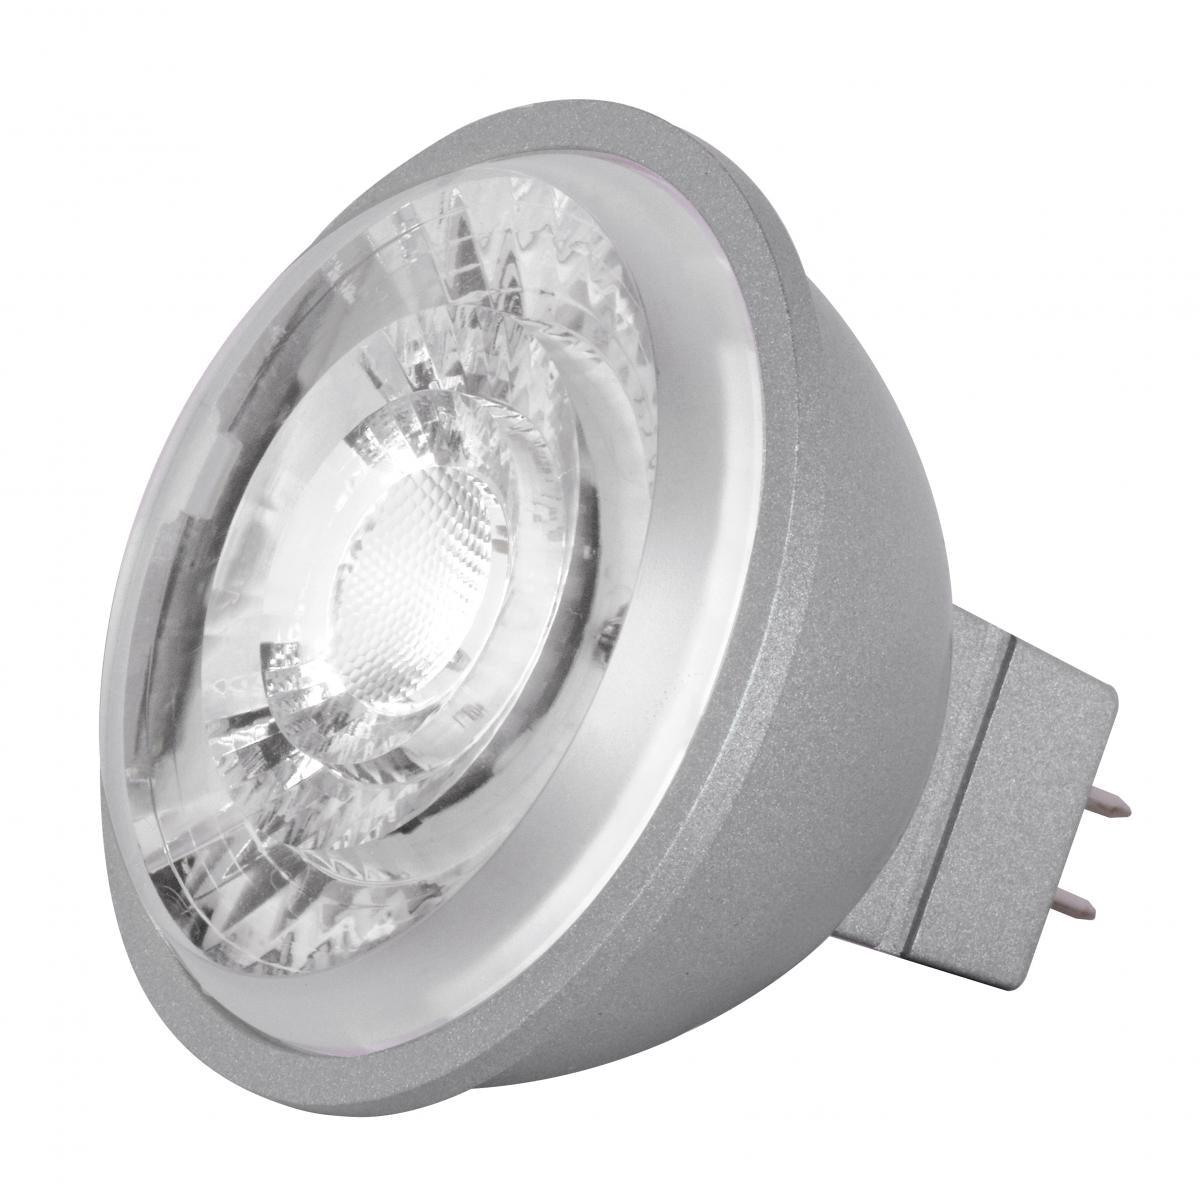 MR16 Reflector LED bulb, 8 watt, 490 Lumens, 3000K, GU5.3 Base, 15 Deg. Spot - Bees Lighting